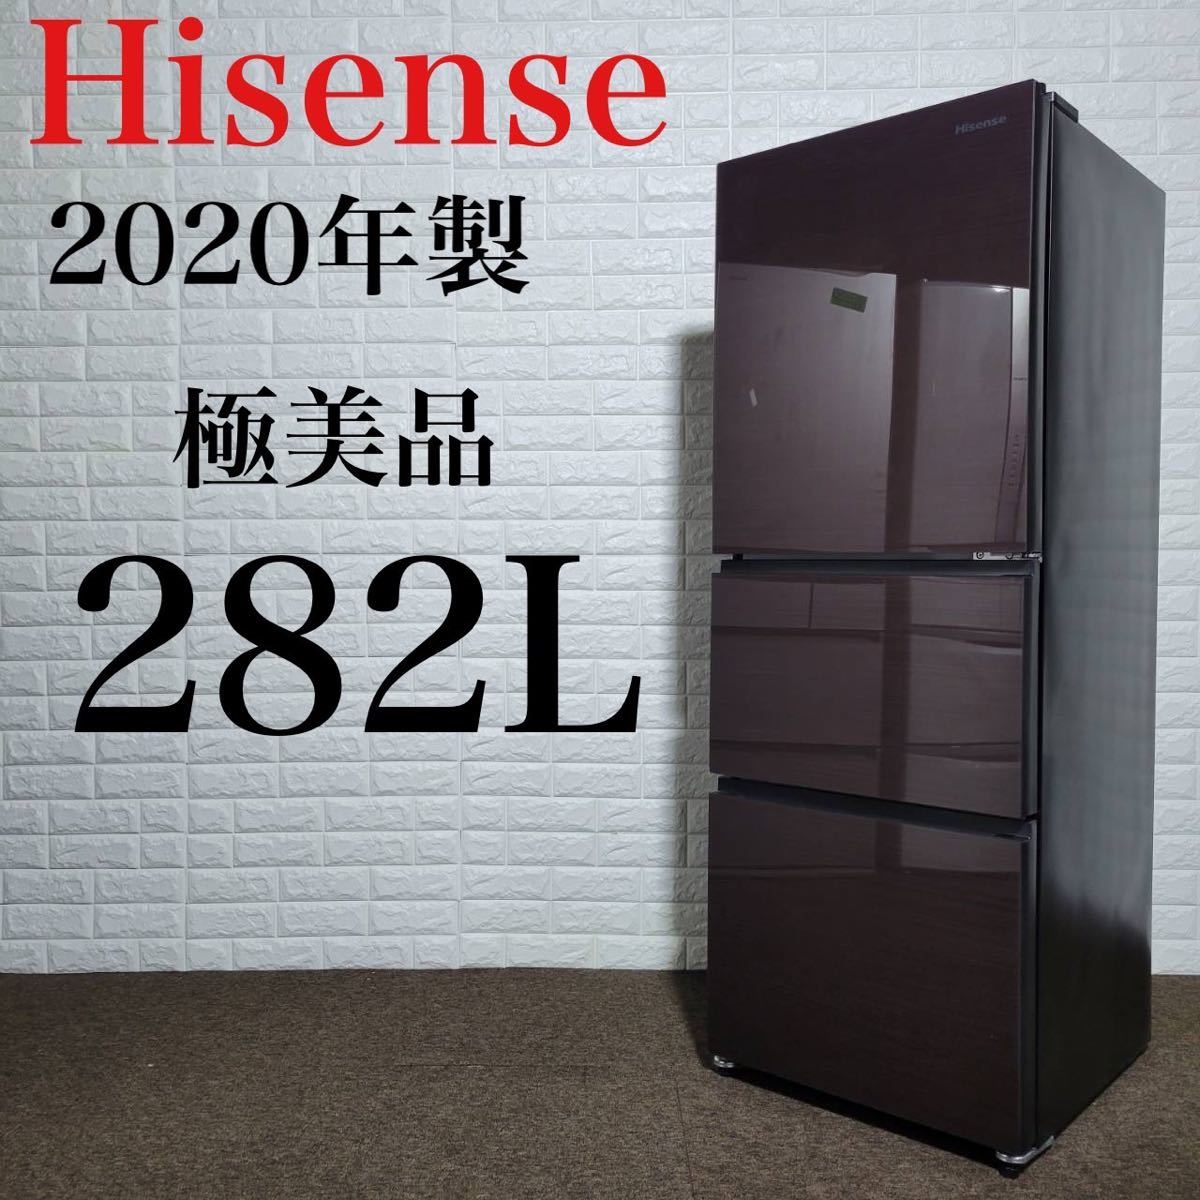 Hisense 冷蔵庫 HR-G2801BR 美品 高年式 おしゃれ M0159-